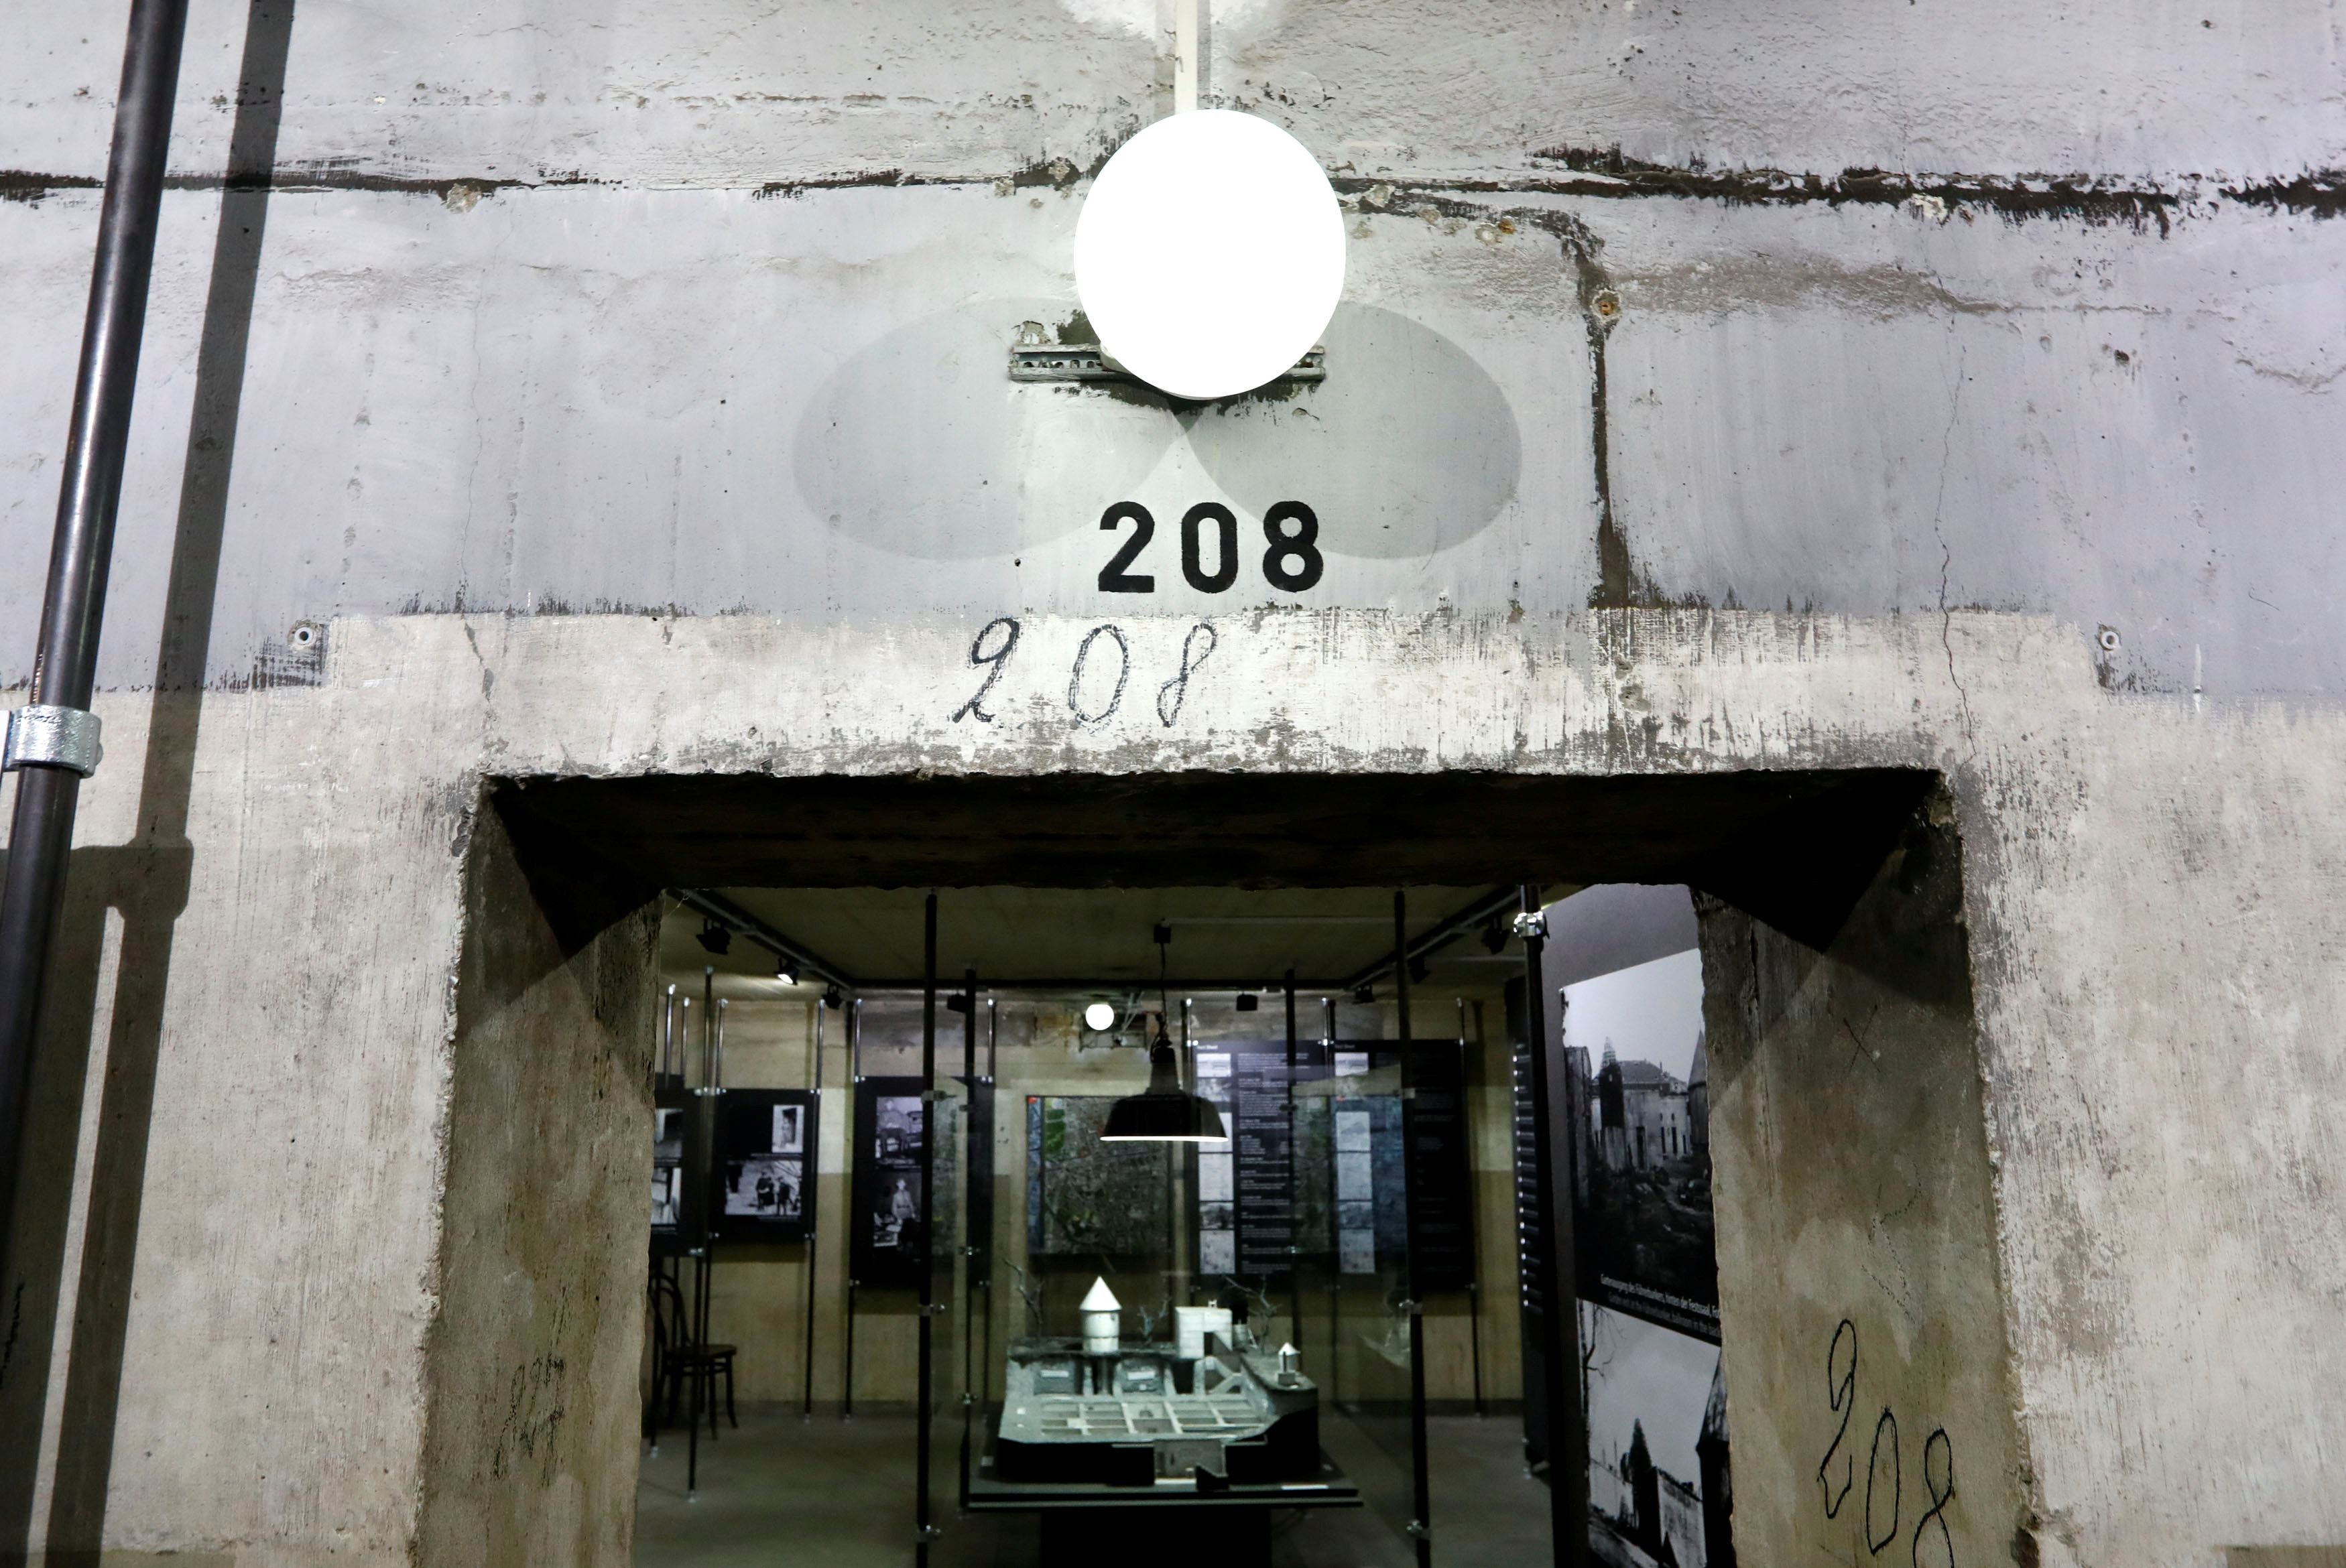 بوابة تحمل رقم 208 داخل مخبئ هتلر فى الحرب العالمية الثانية